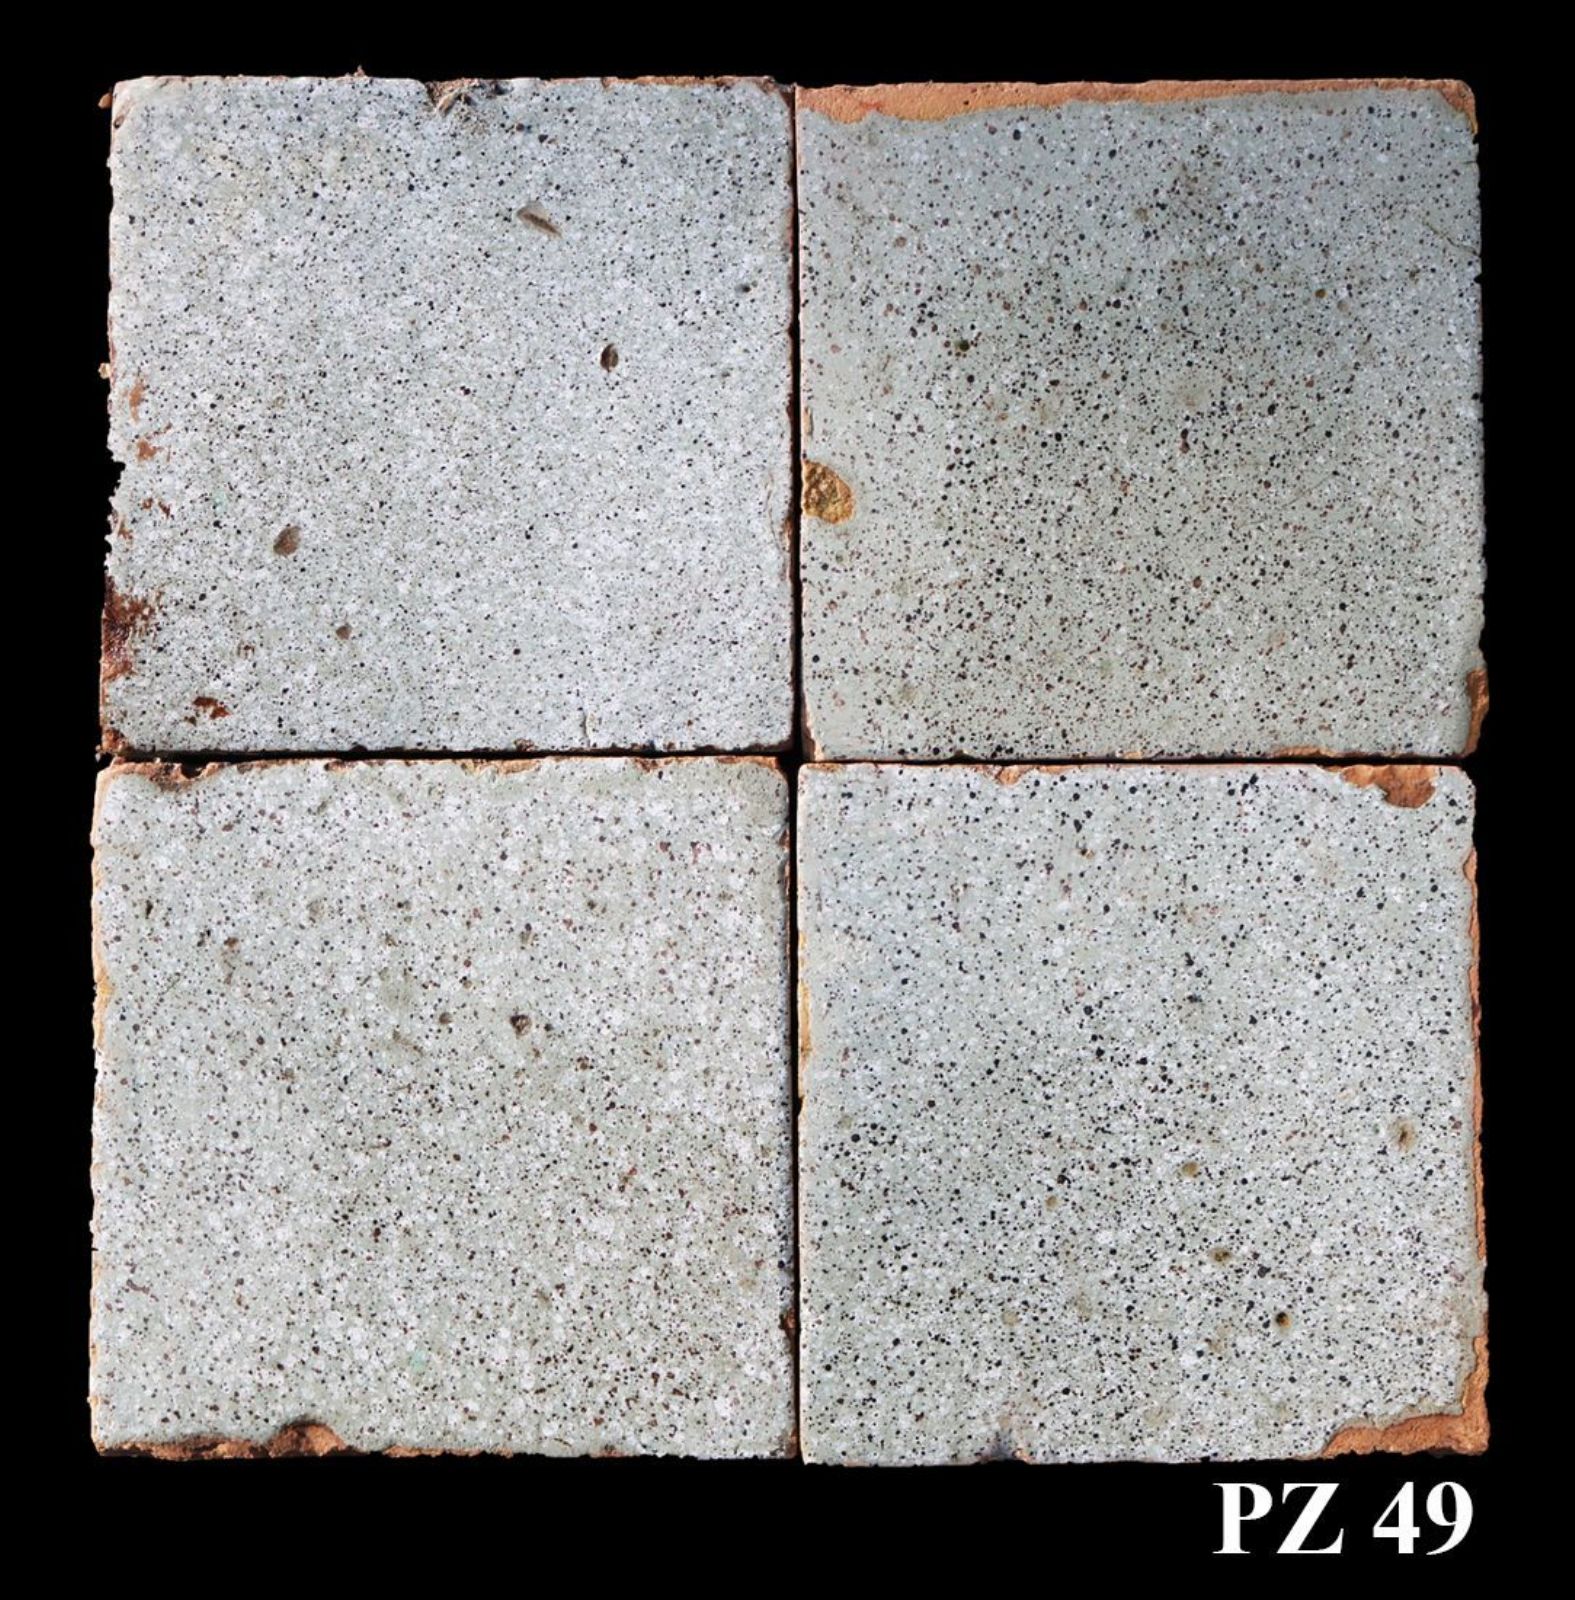 Antica pavimentazione in maiolica - Maioliche Antiche - Pavimentazioni Antiche - Prodotti - Antichità Fiorillo